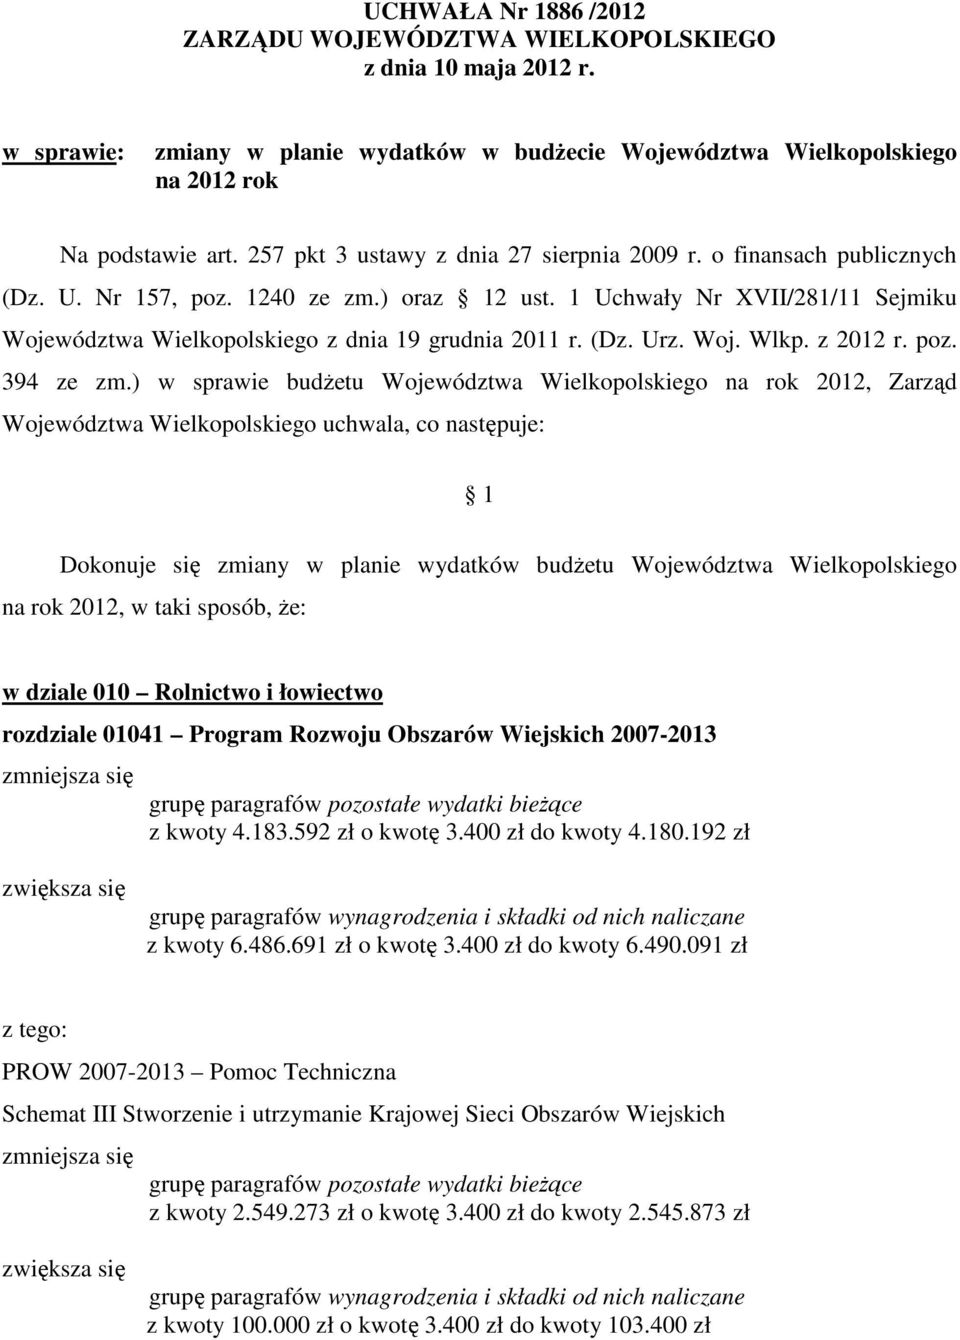 1 Uchwały Nr XVII/281/11 Sejmiku Województwa Wielkopolskiego z dnia 19 grudnia 2011 r. (Dz. Urz. Woj. Wlkp. z 2012 r. poz. 394 ze zm.